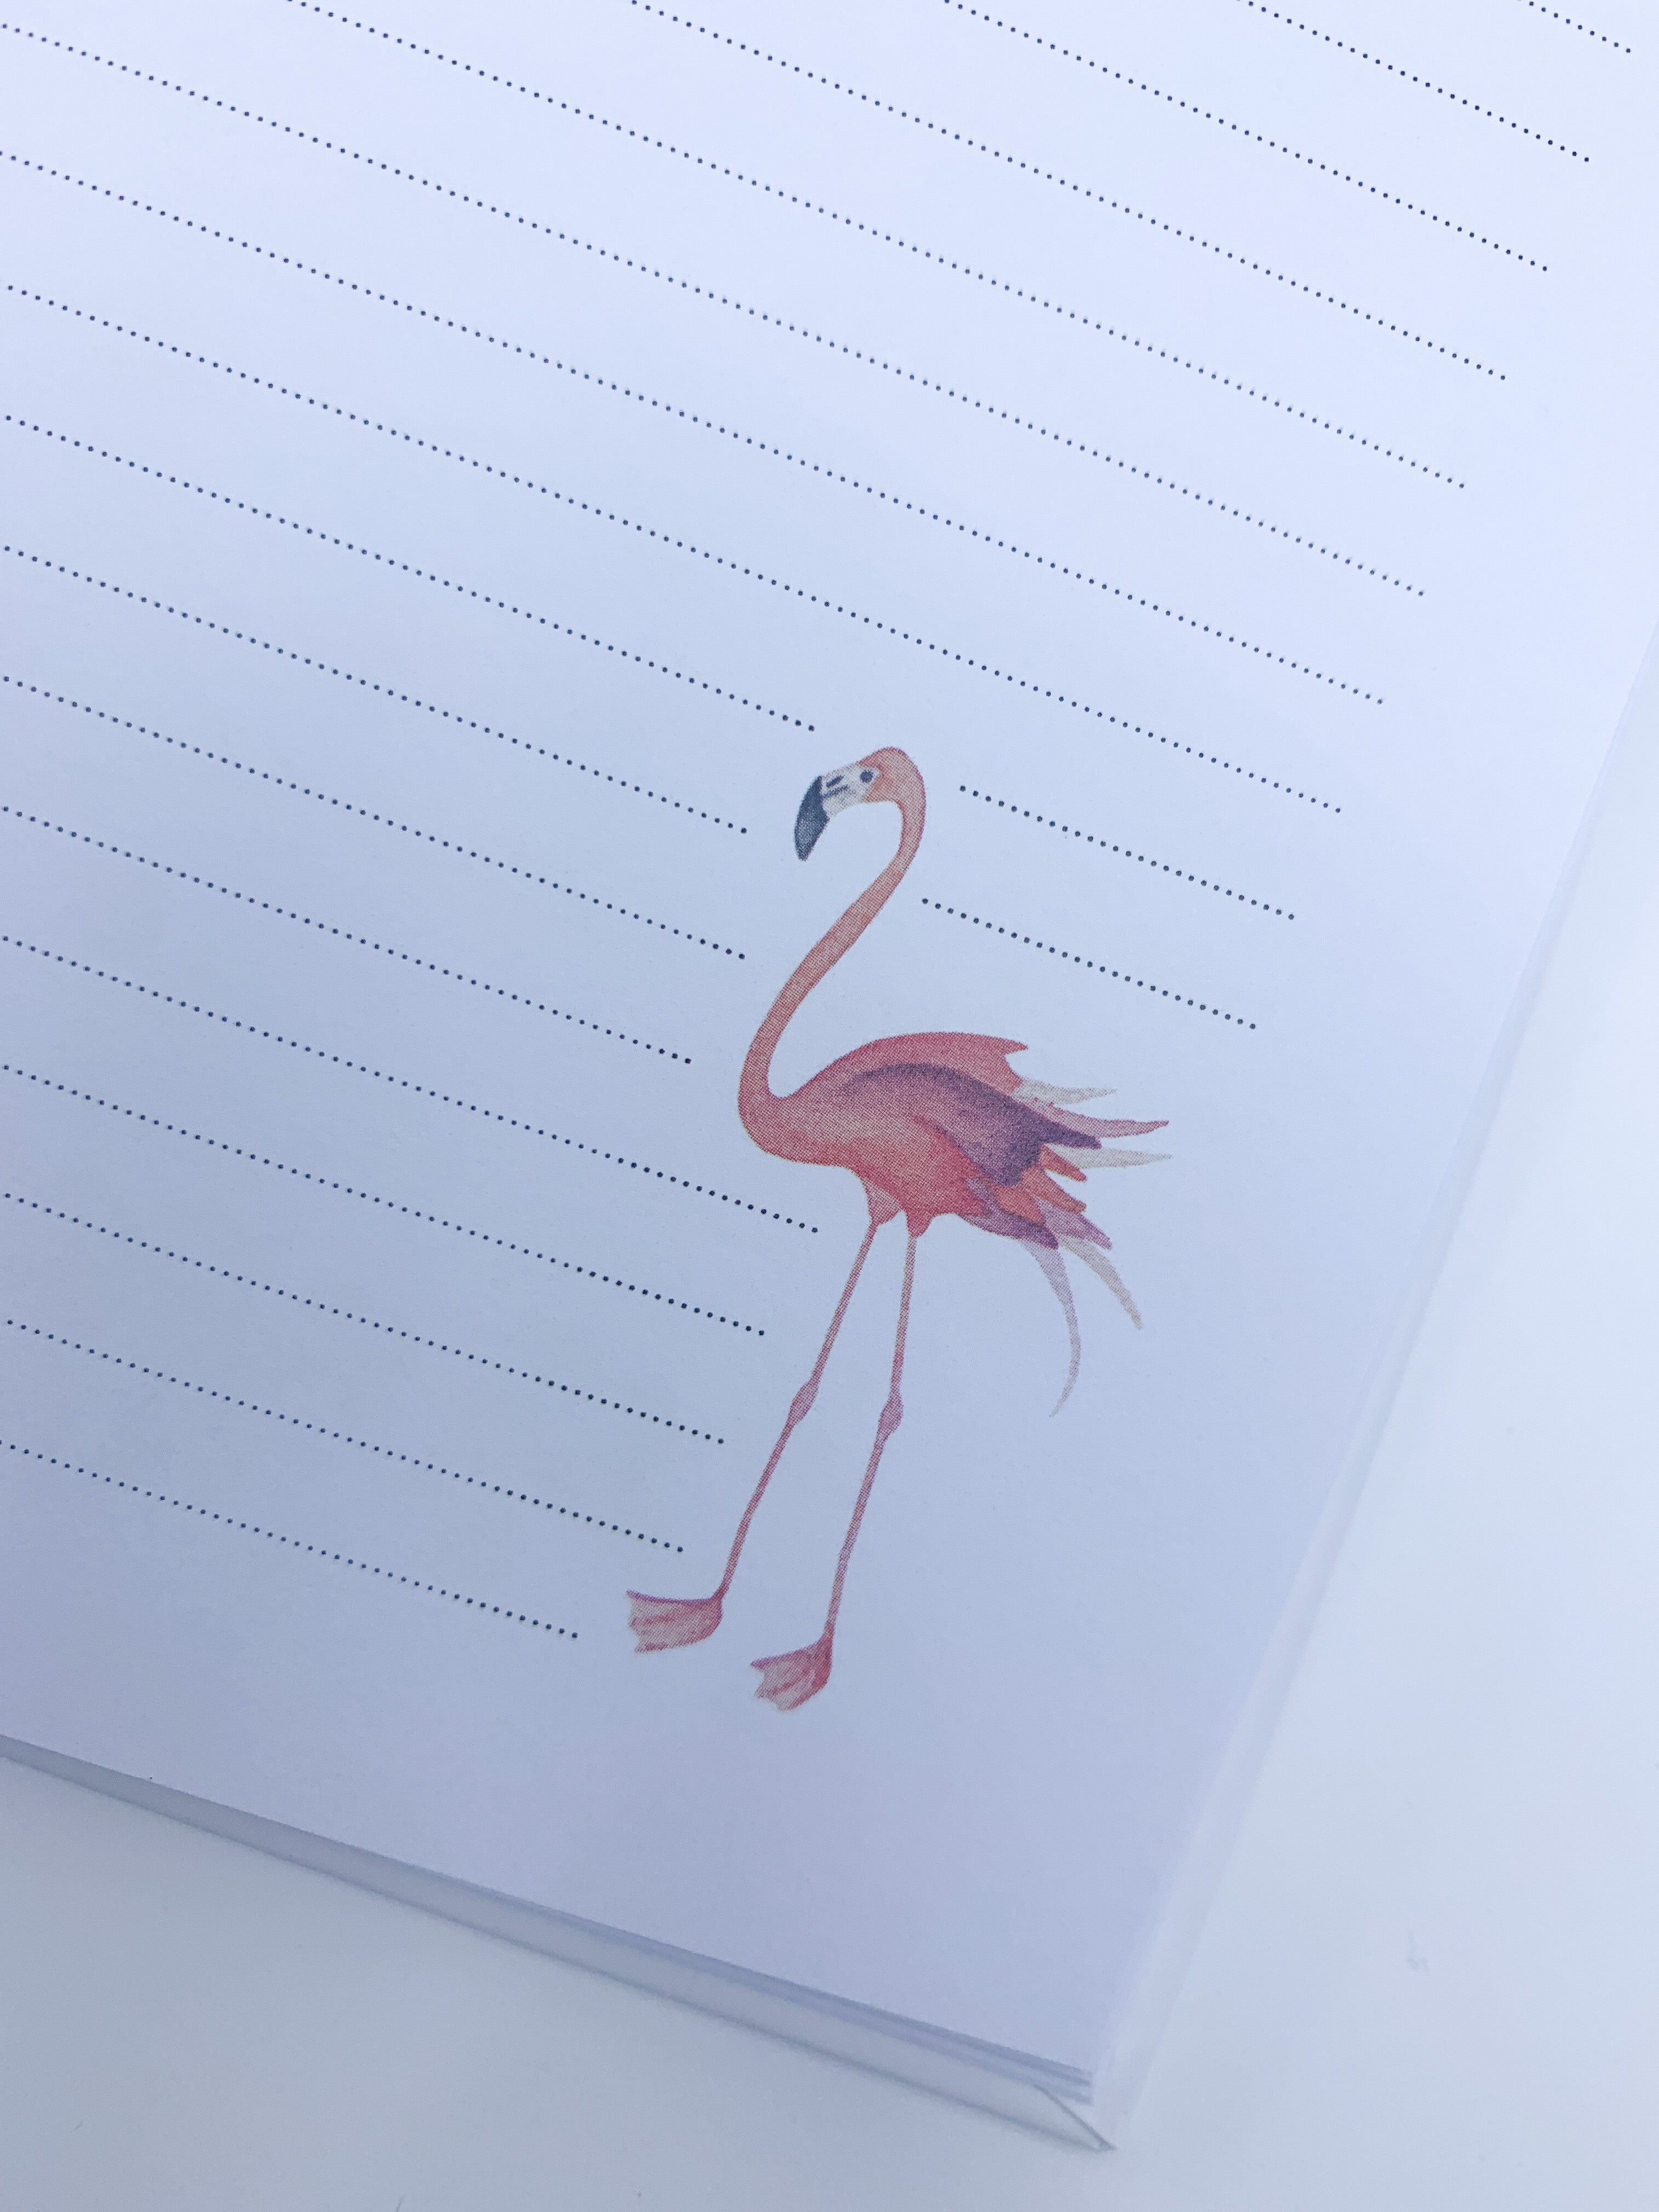 Invulboek zwangerschap ‘Baby on the Way’ - Flamingo